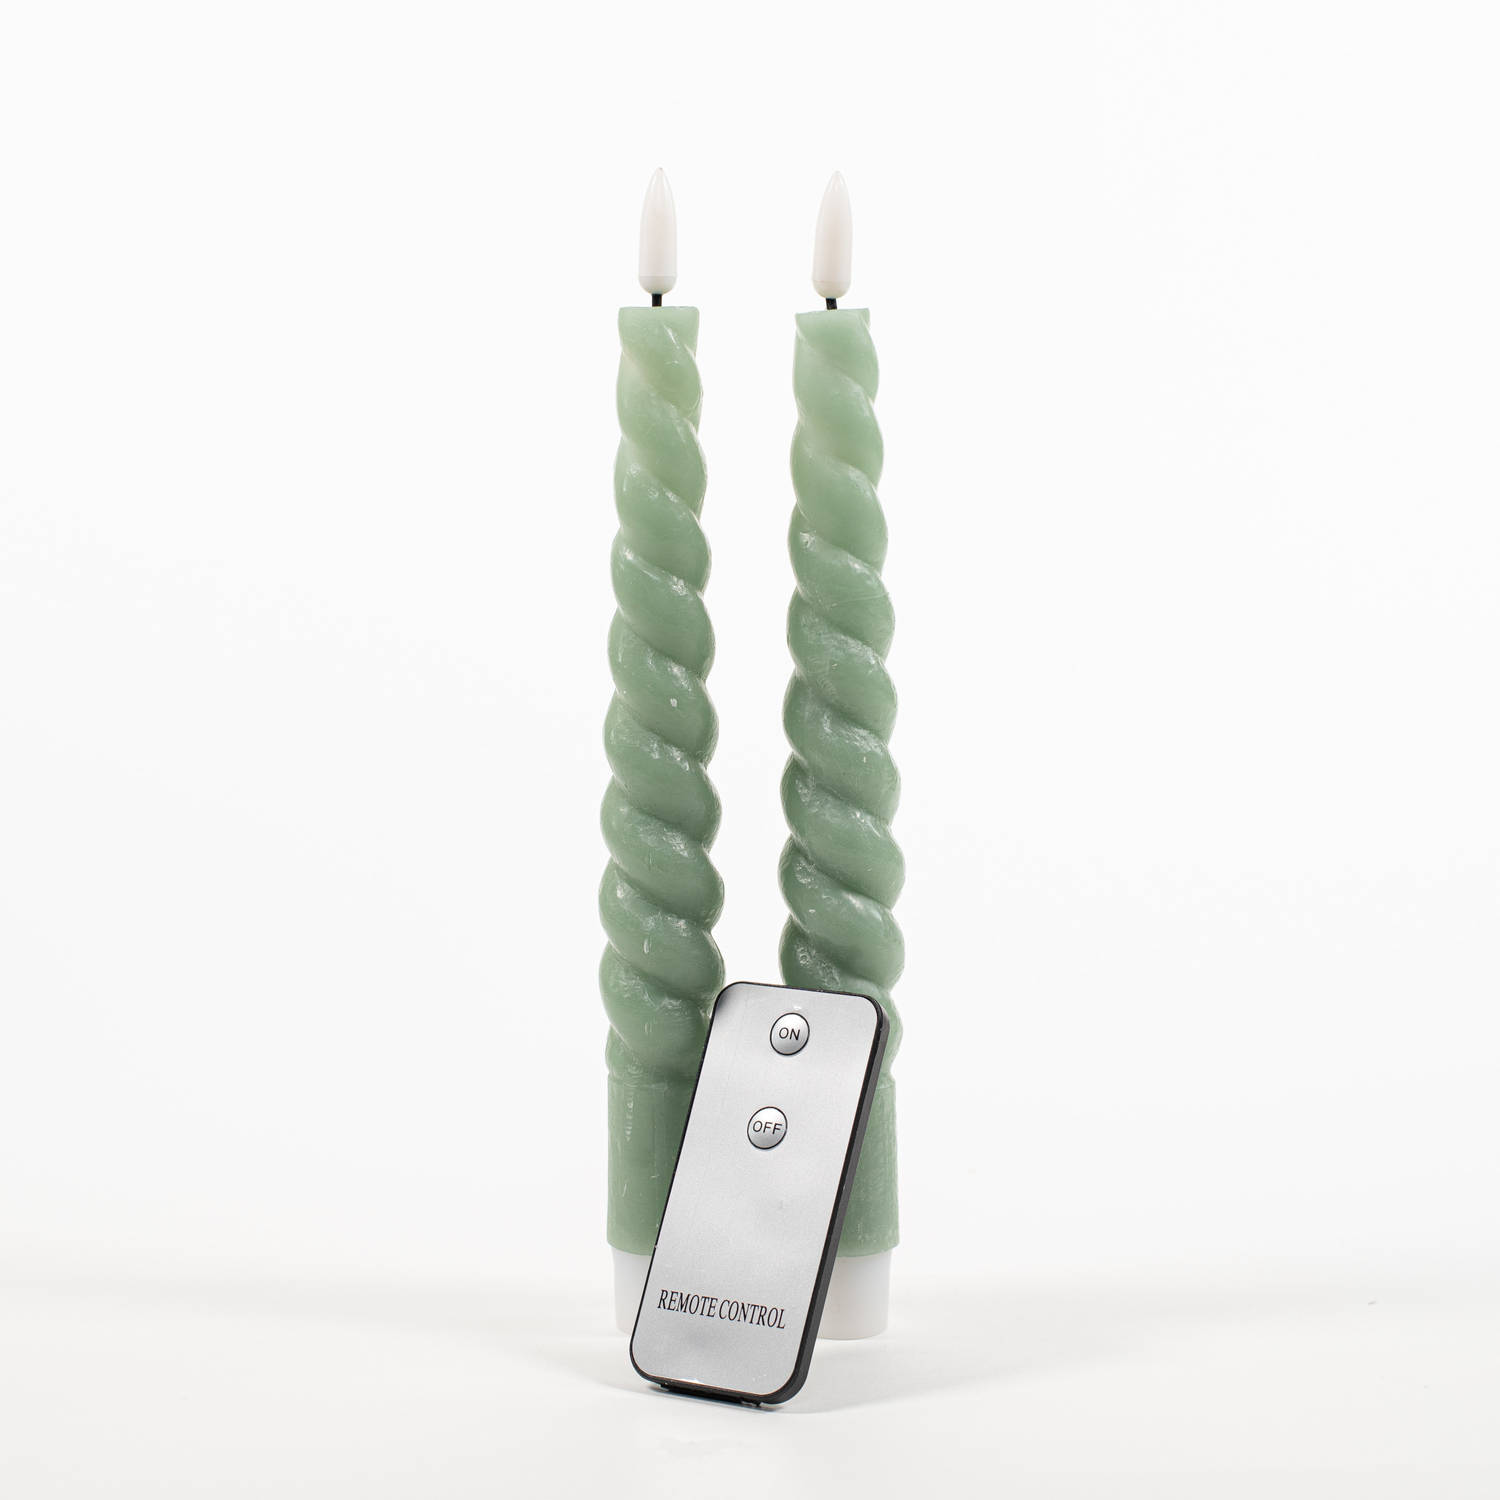 Led dinerkaarsen swirl 2x jade groen 23 cm afstandsbediening LED kaarsen